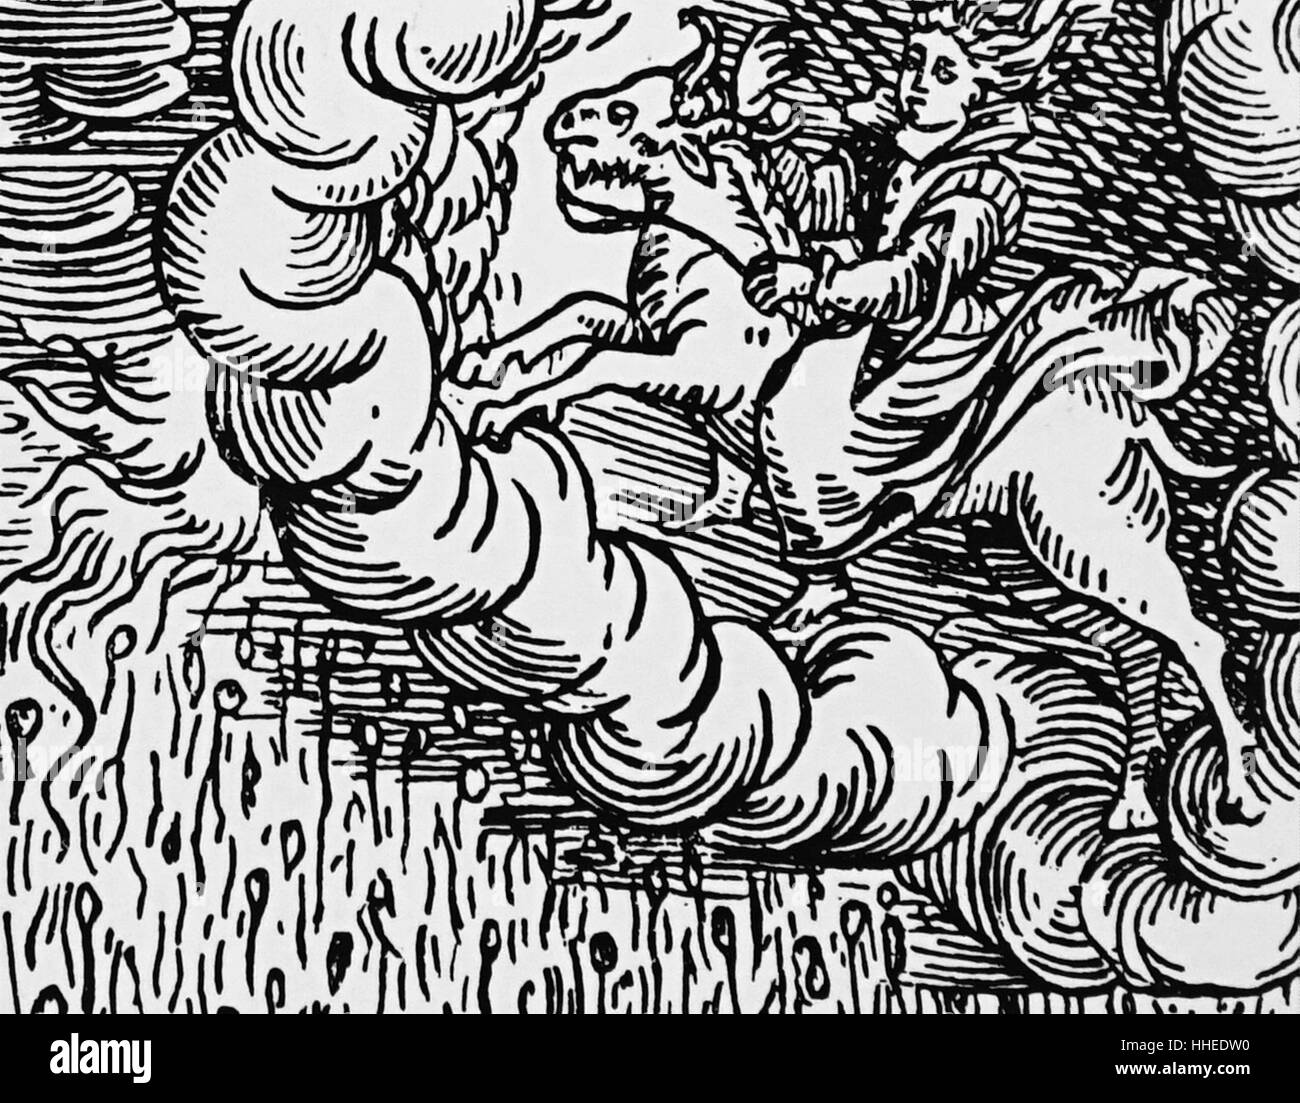 Gravure sur bois représentant une sorcière, équitation une chèvre (le diable) à travers le ciel, faisant tomber la pluie des nuages. De Francesco Maria Guazzo (1500-1600) Compendium Maleficarum. En date du 17e siècle Banque D'Images